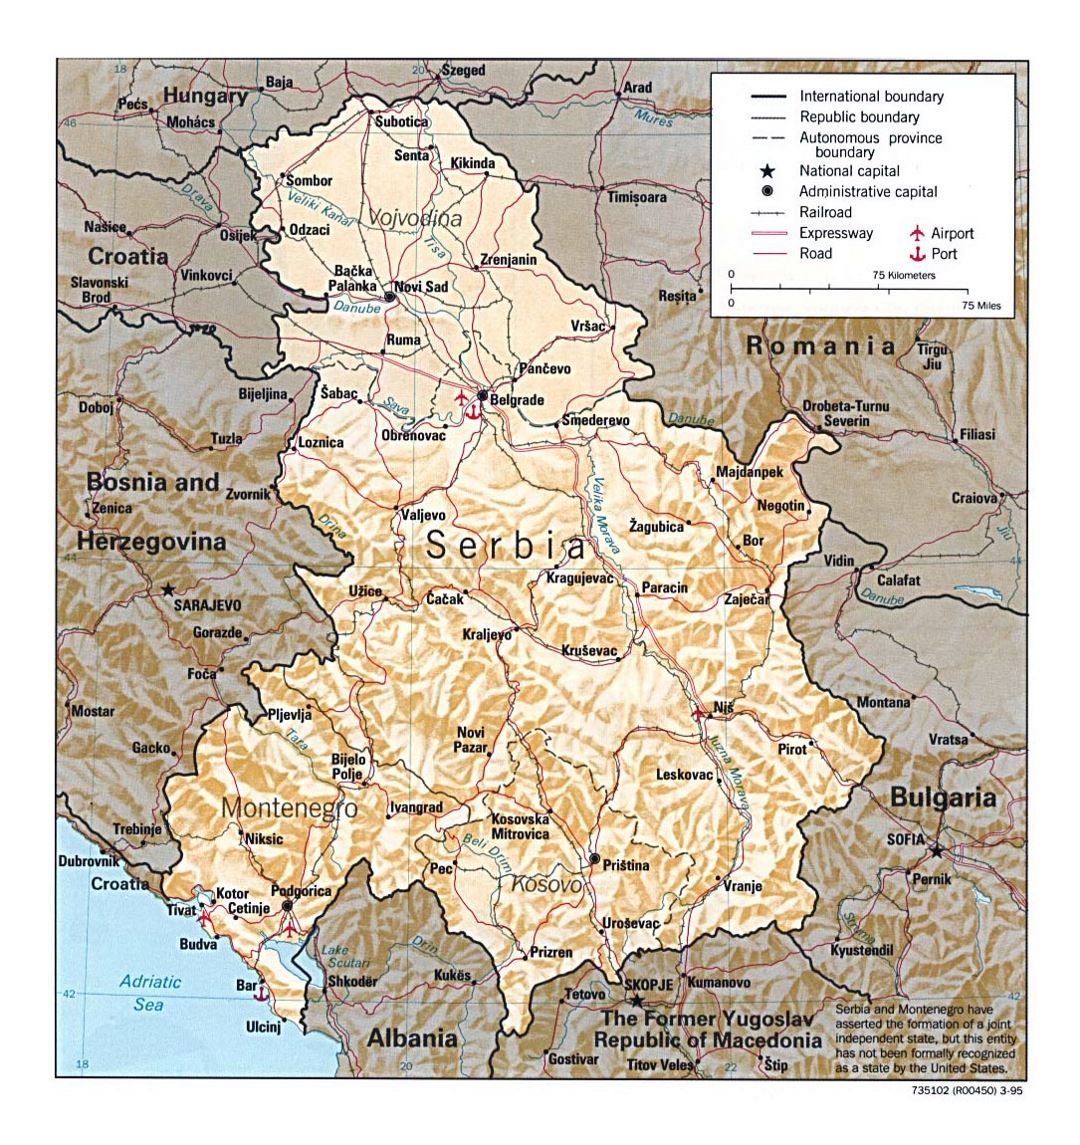 Detallado mapa político de Serbia y Montenegro con relieve, carreteras, ferrocarriles y principales ciudades - 1995